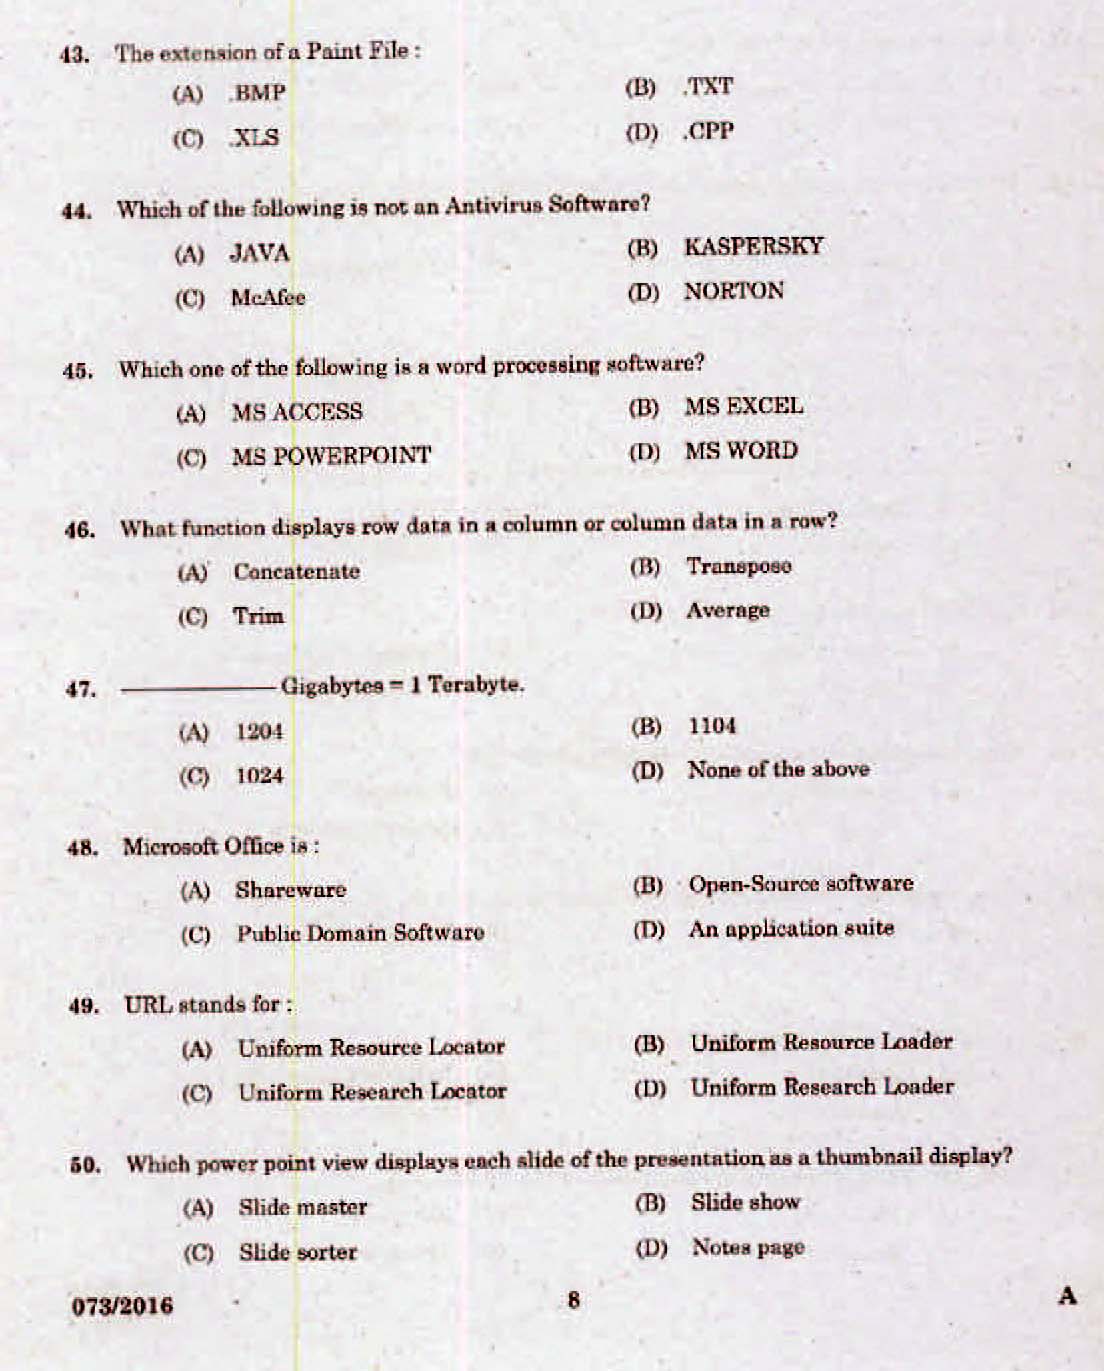 Kerala PSC Computer Assistant Grade II Exam 2016 Question Paper Code 0732016 6